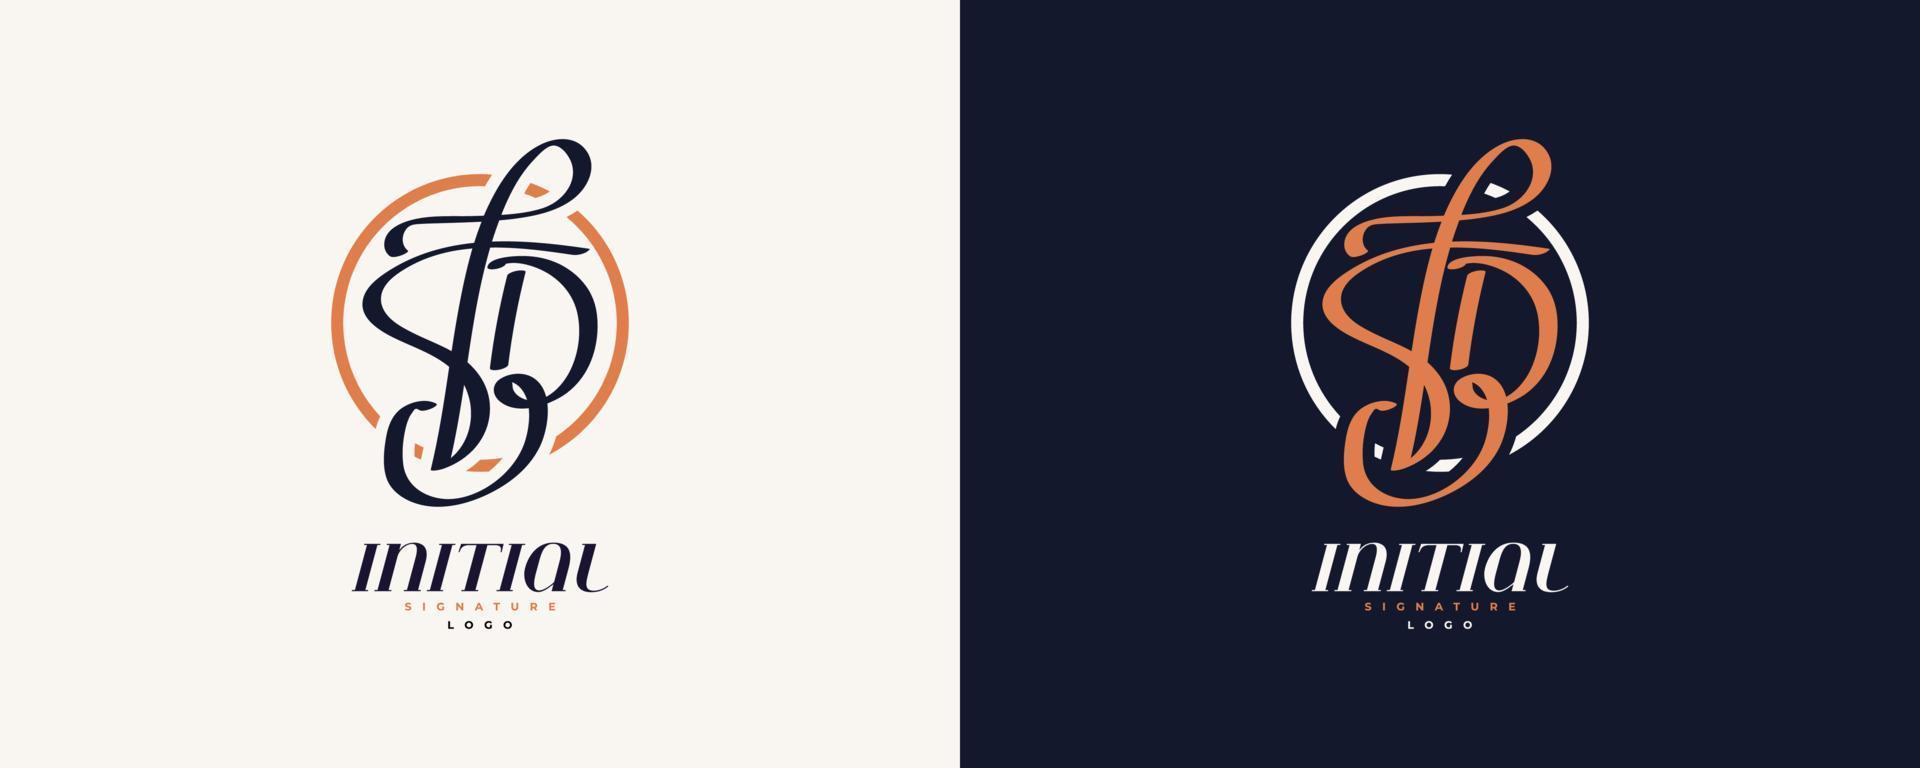 diseño inicial del logotipo f y b en un estilo de escritura elegante y minimalista. logotipo o símbolo de la firma fb para bodas, moda, joyería, boutique e identidad comercial vector